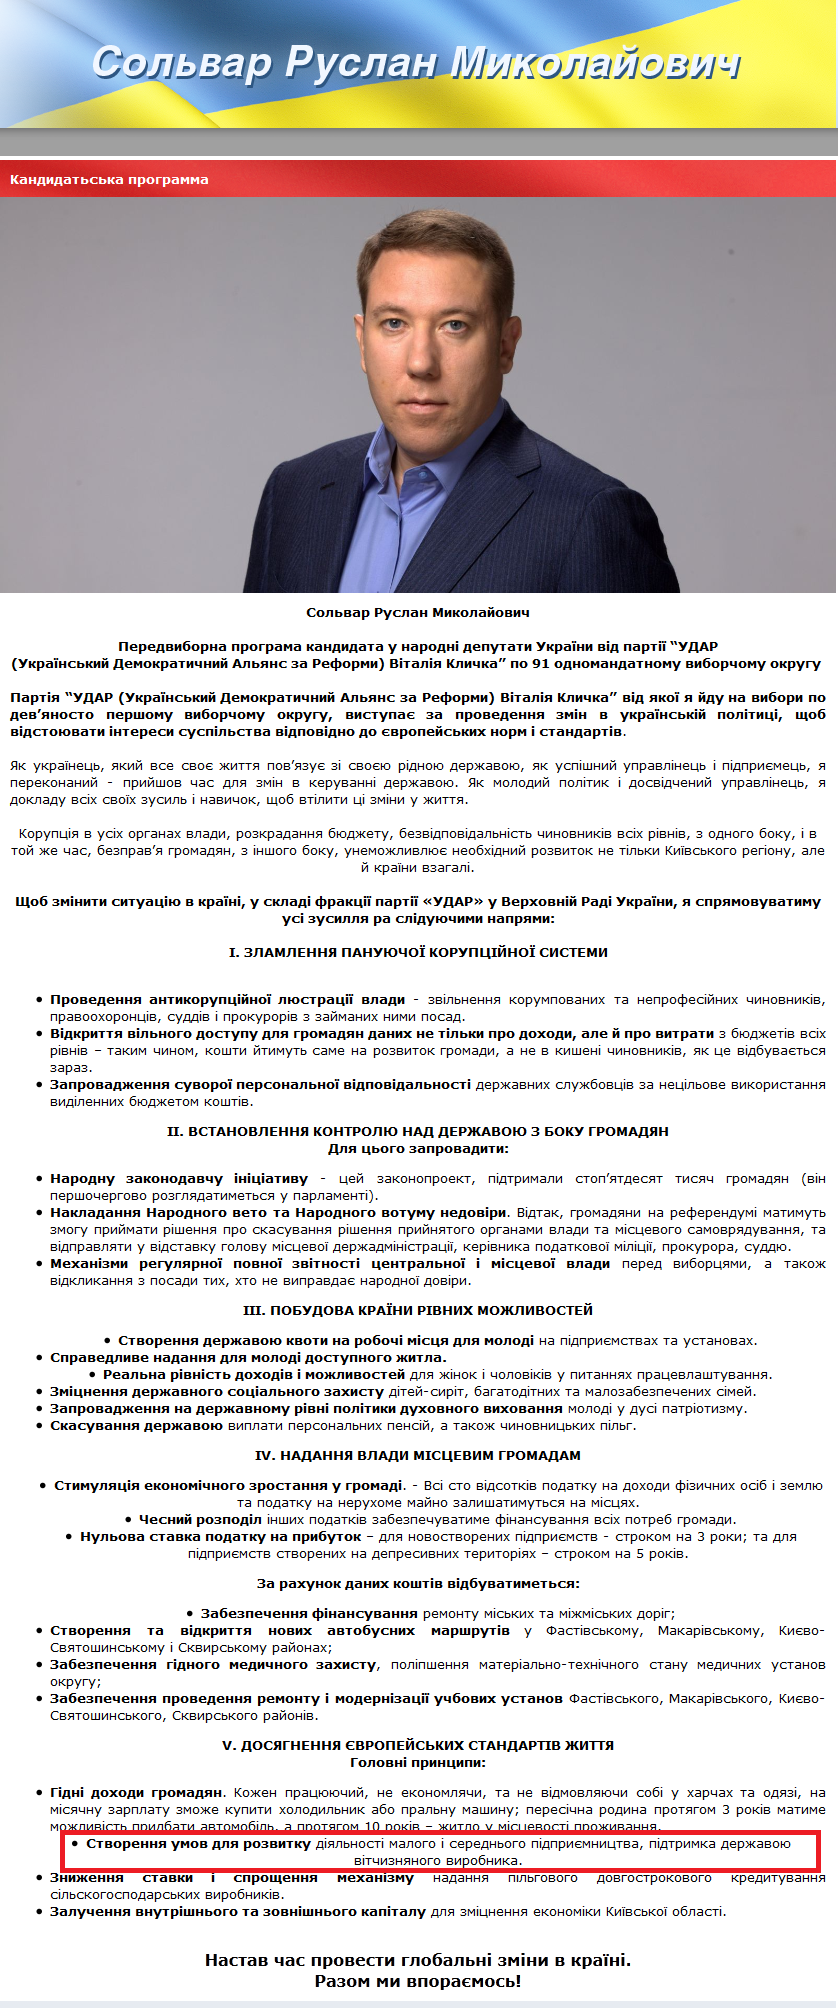 http://solvar.com.ua/kandidatska-programma-.html